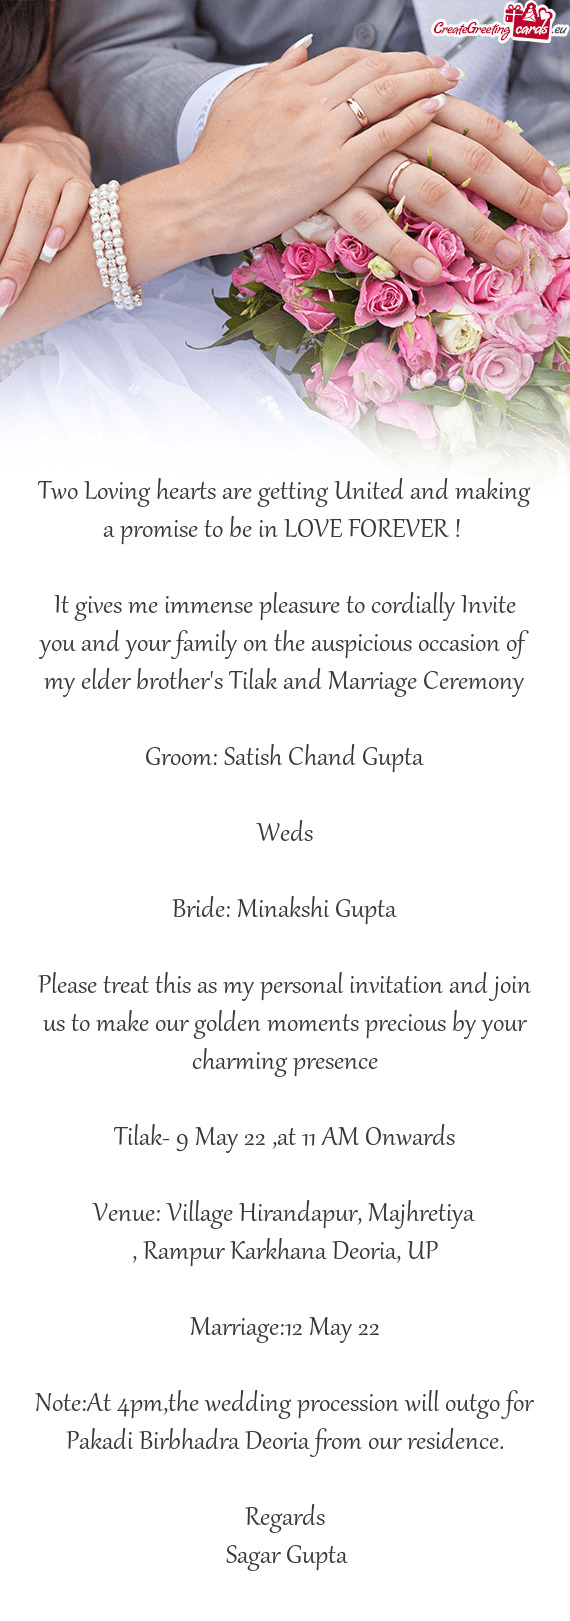 Bride: Minakshi Gupta